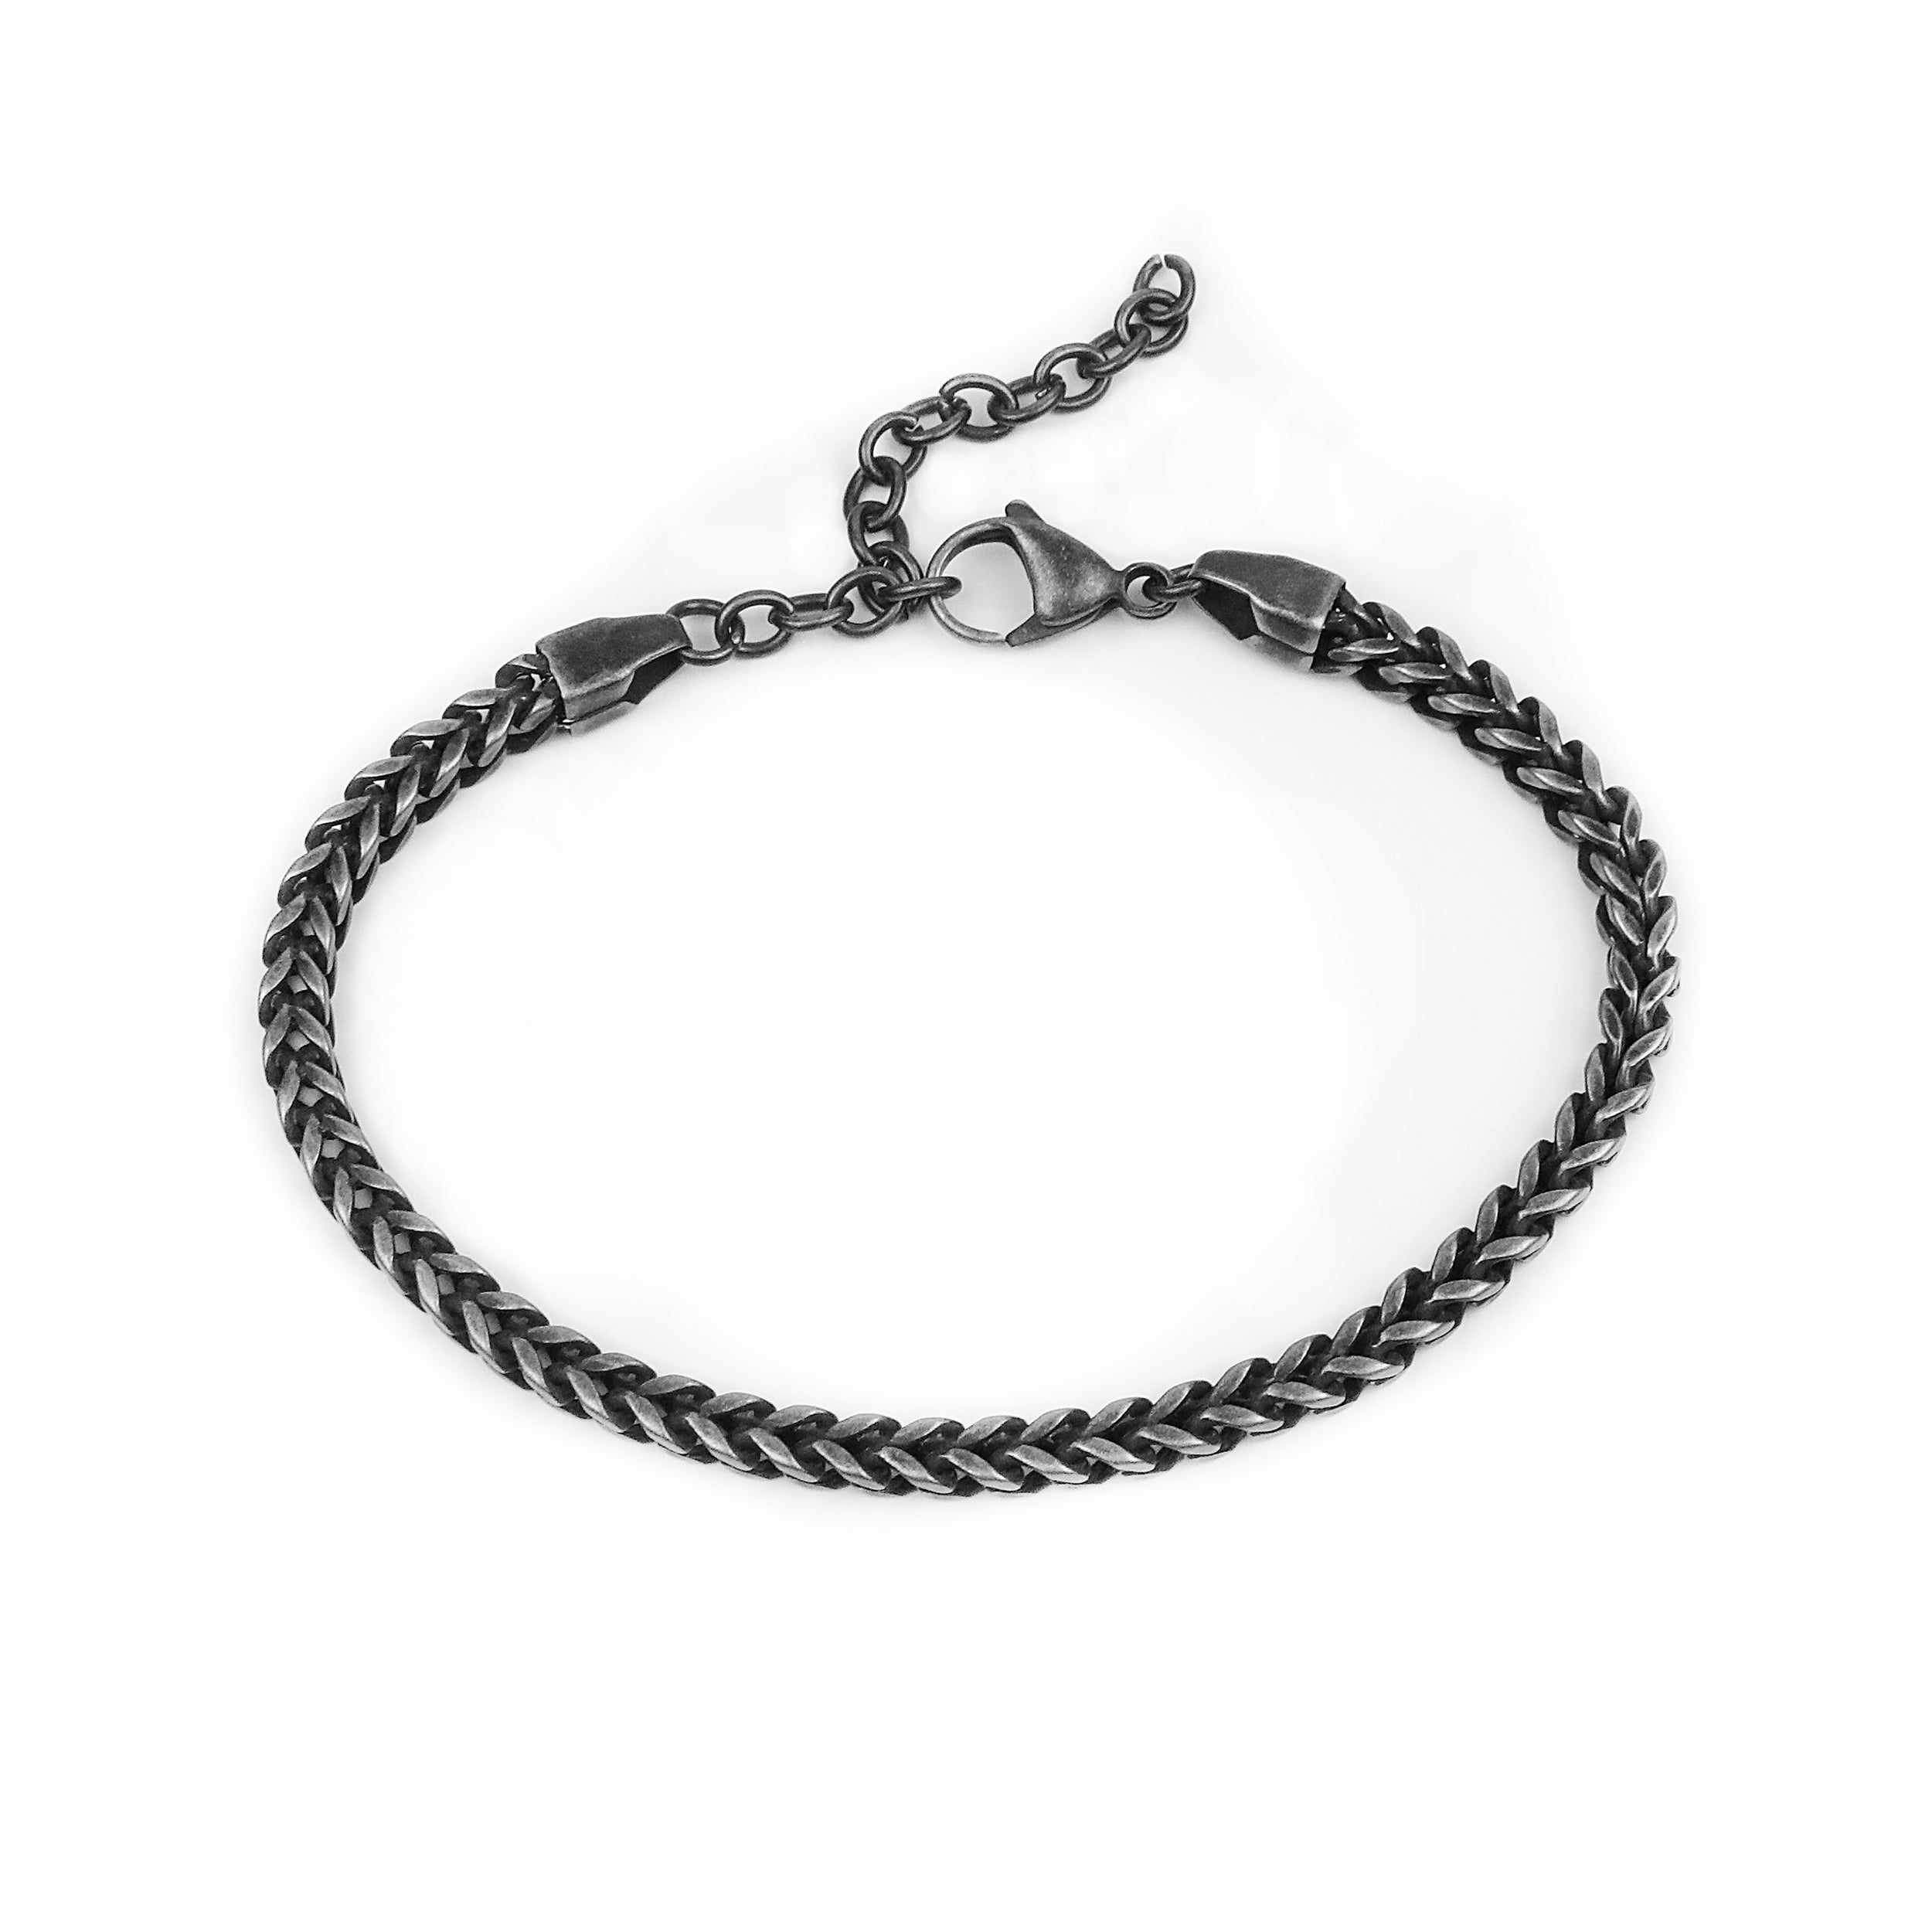 Franco Chain Bracelet - Antique Silver 4mm